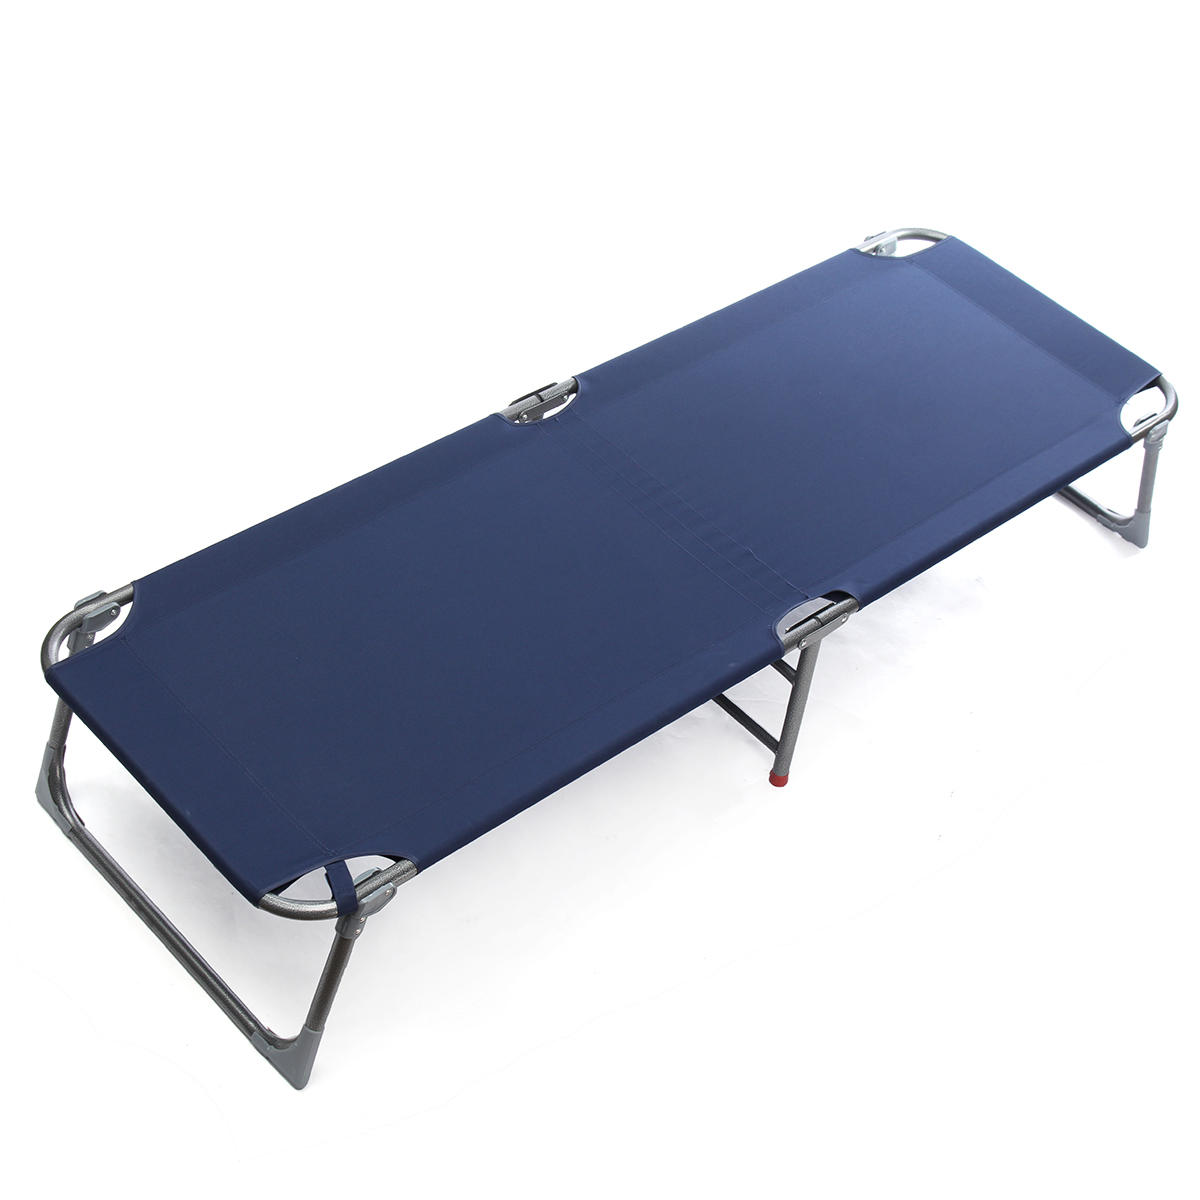 Φορητό αναδιπλούμενο κρεβάτι για κατασκήνωση στον ανοιχτό αέρα, για ξεκούραση κατά τη διάρκεια της ημέρας, αναπαυτική καρέκλα